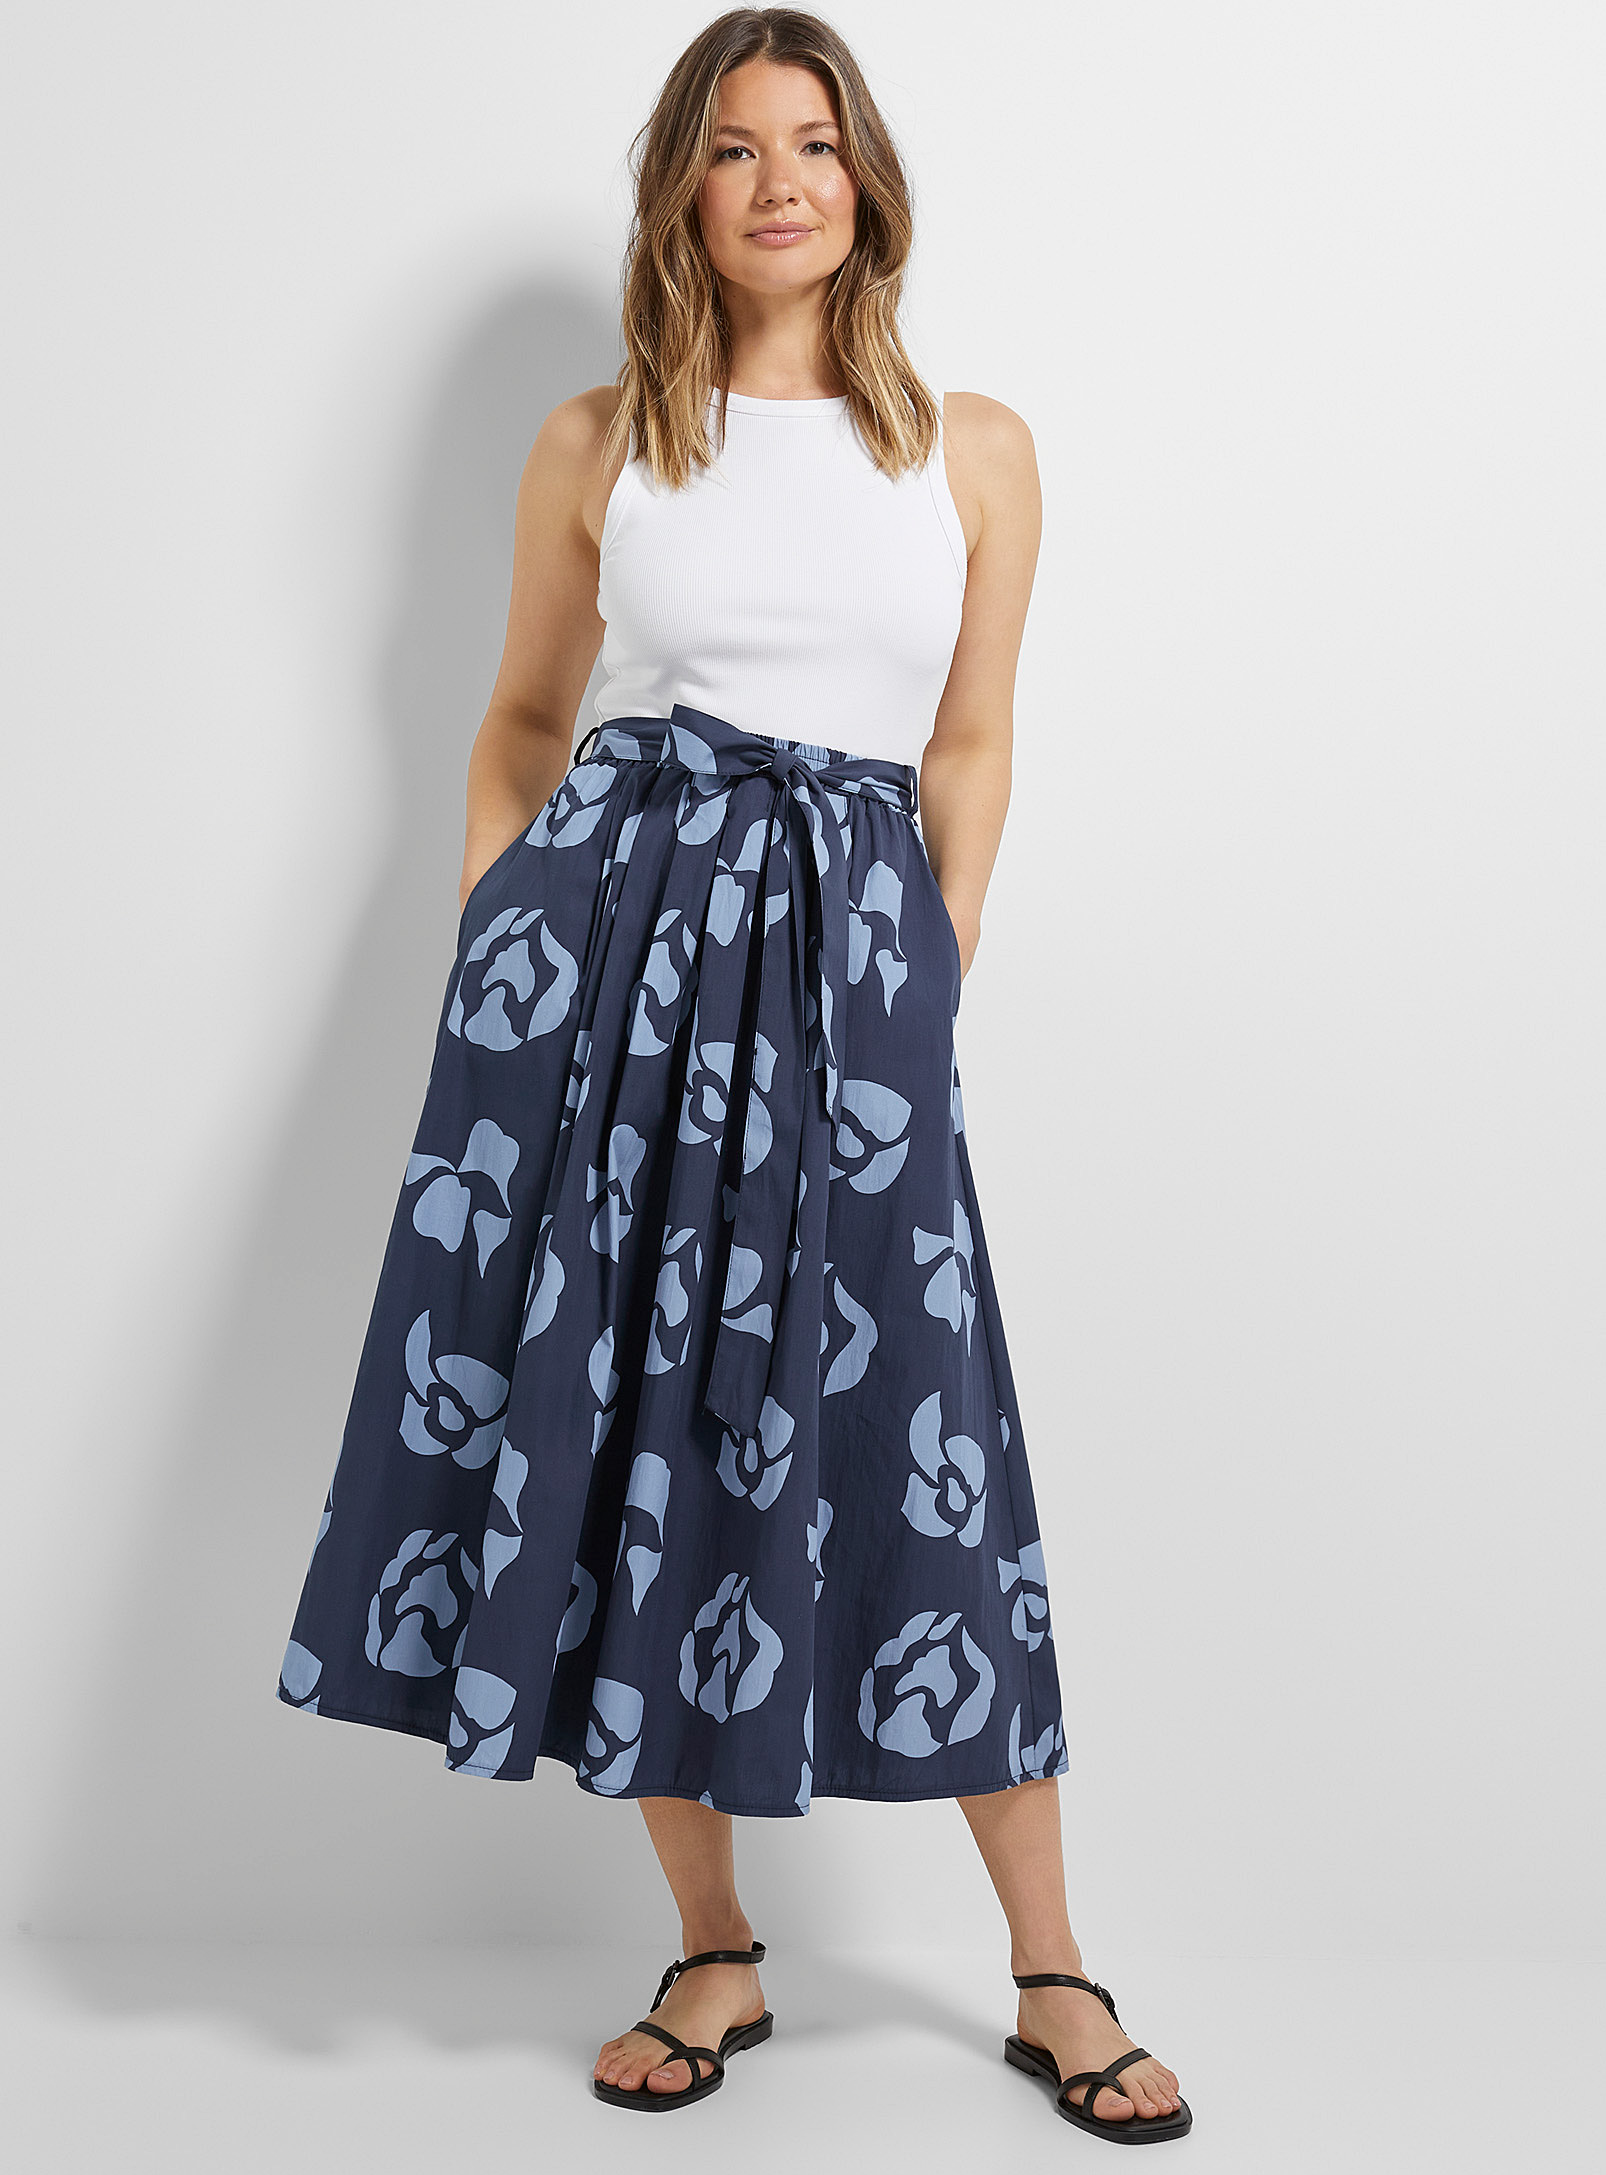 Contemporaine - La jupe taille nouée fleurs bleues